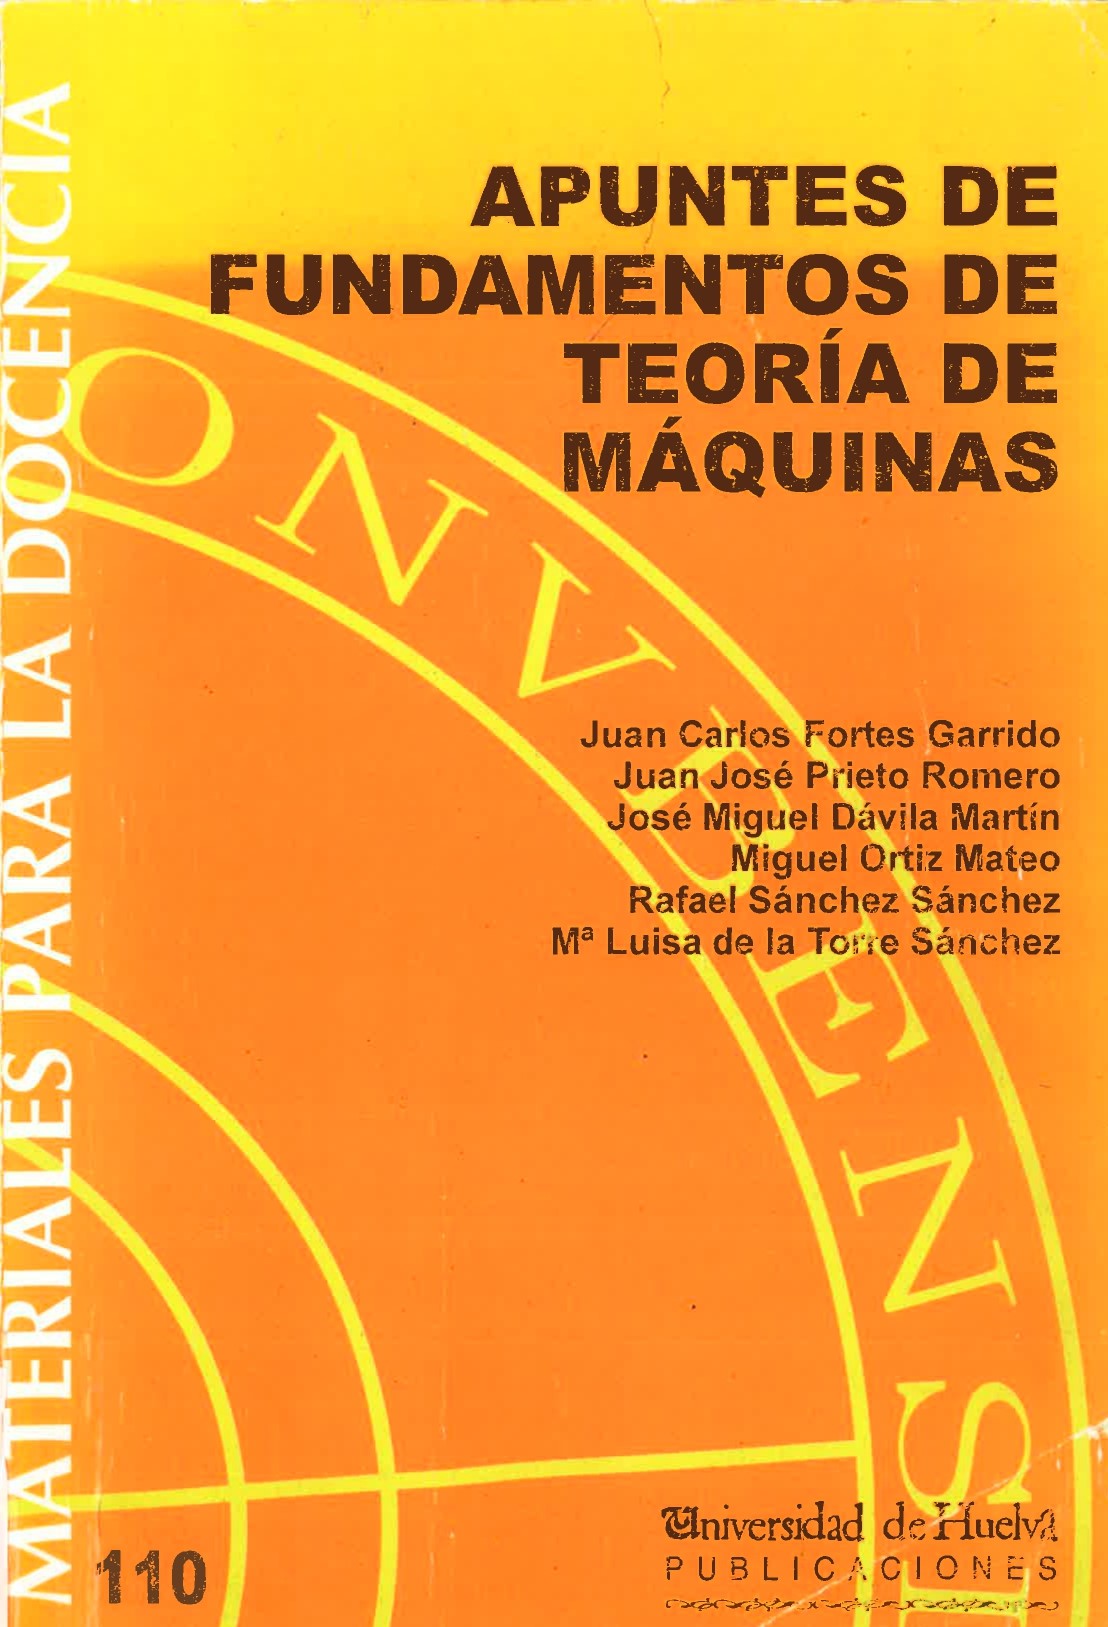 Imagen de portada del libro Apuntes de fundamentos de teoría de máquinas